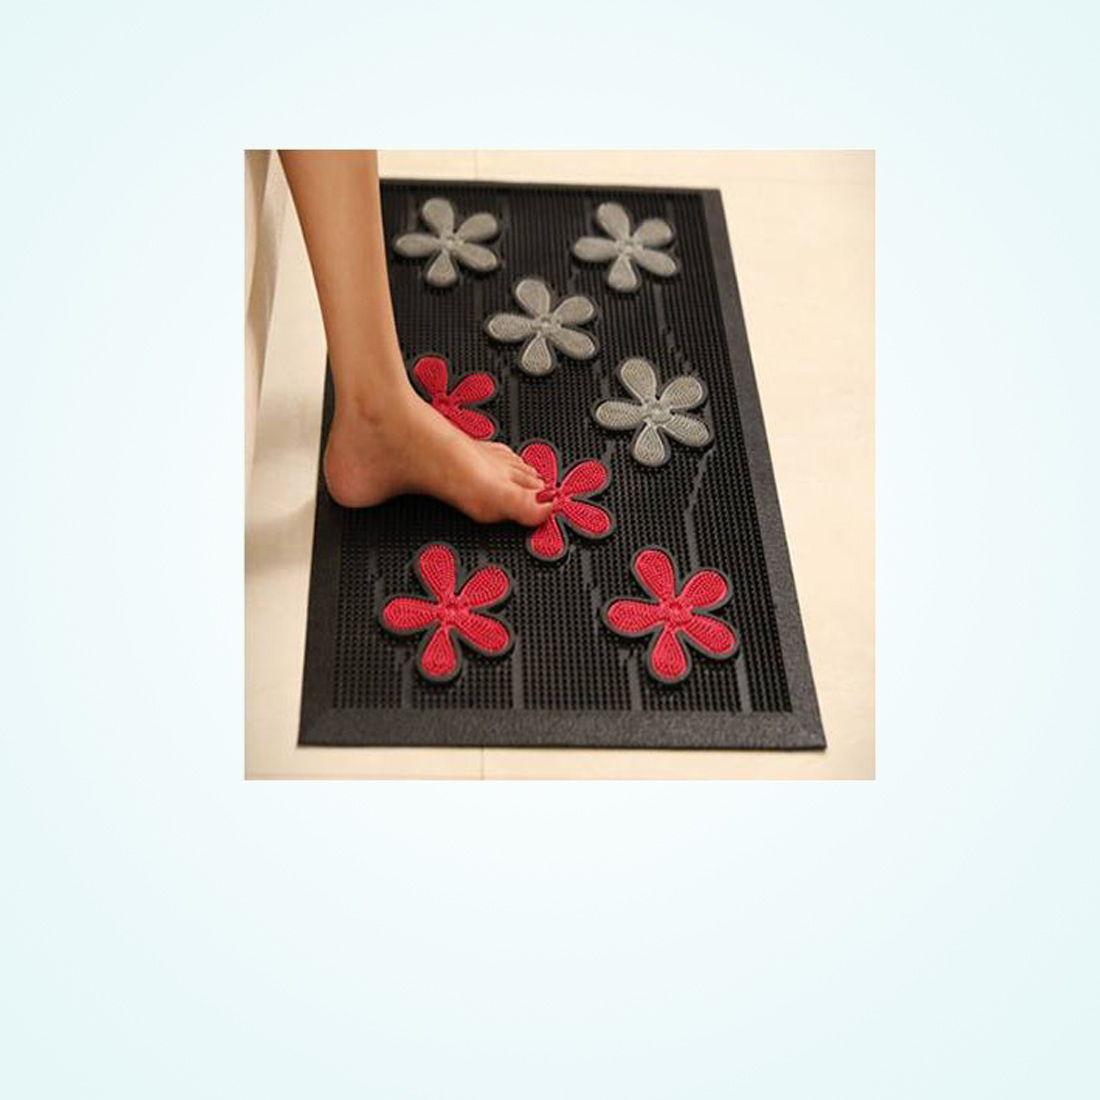 rubber floor mats